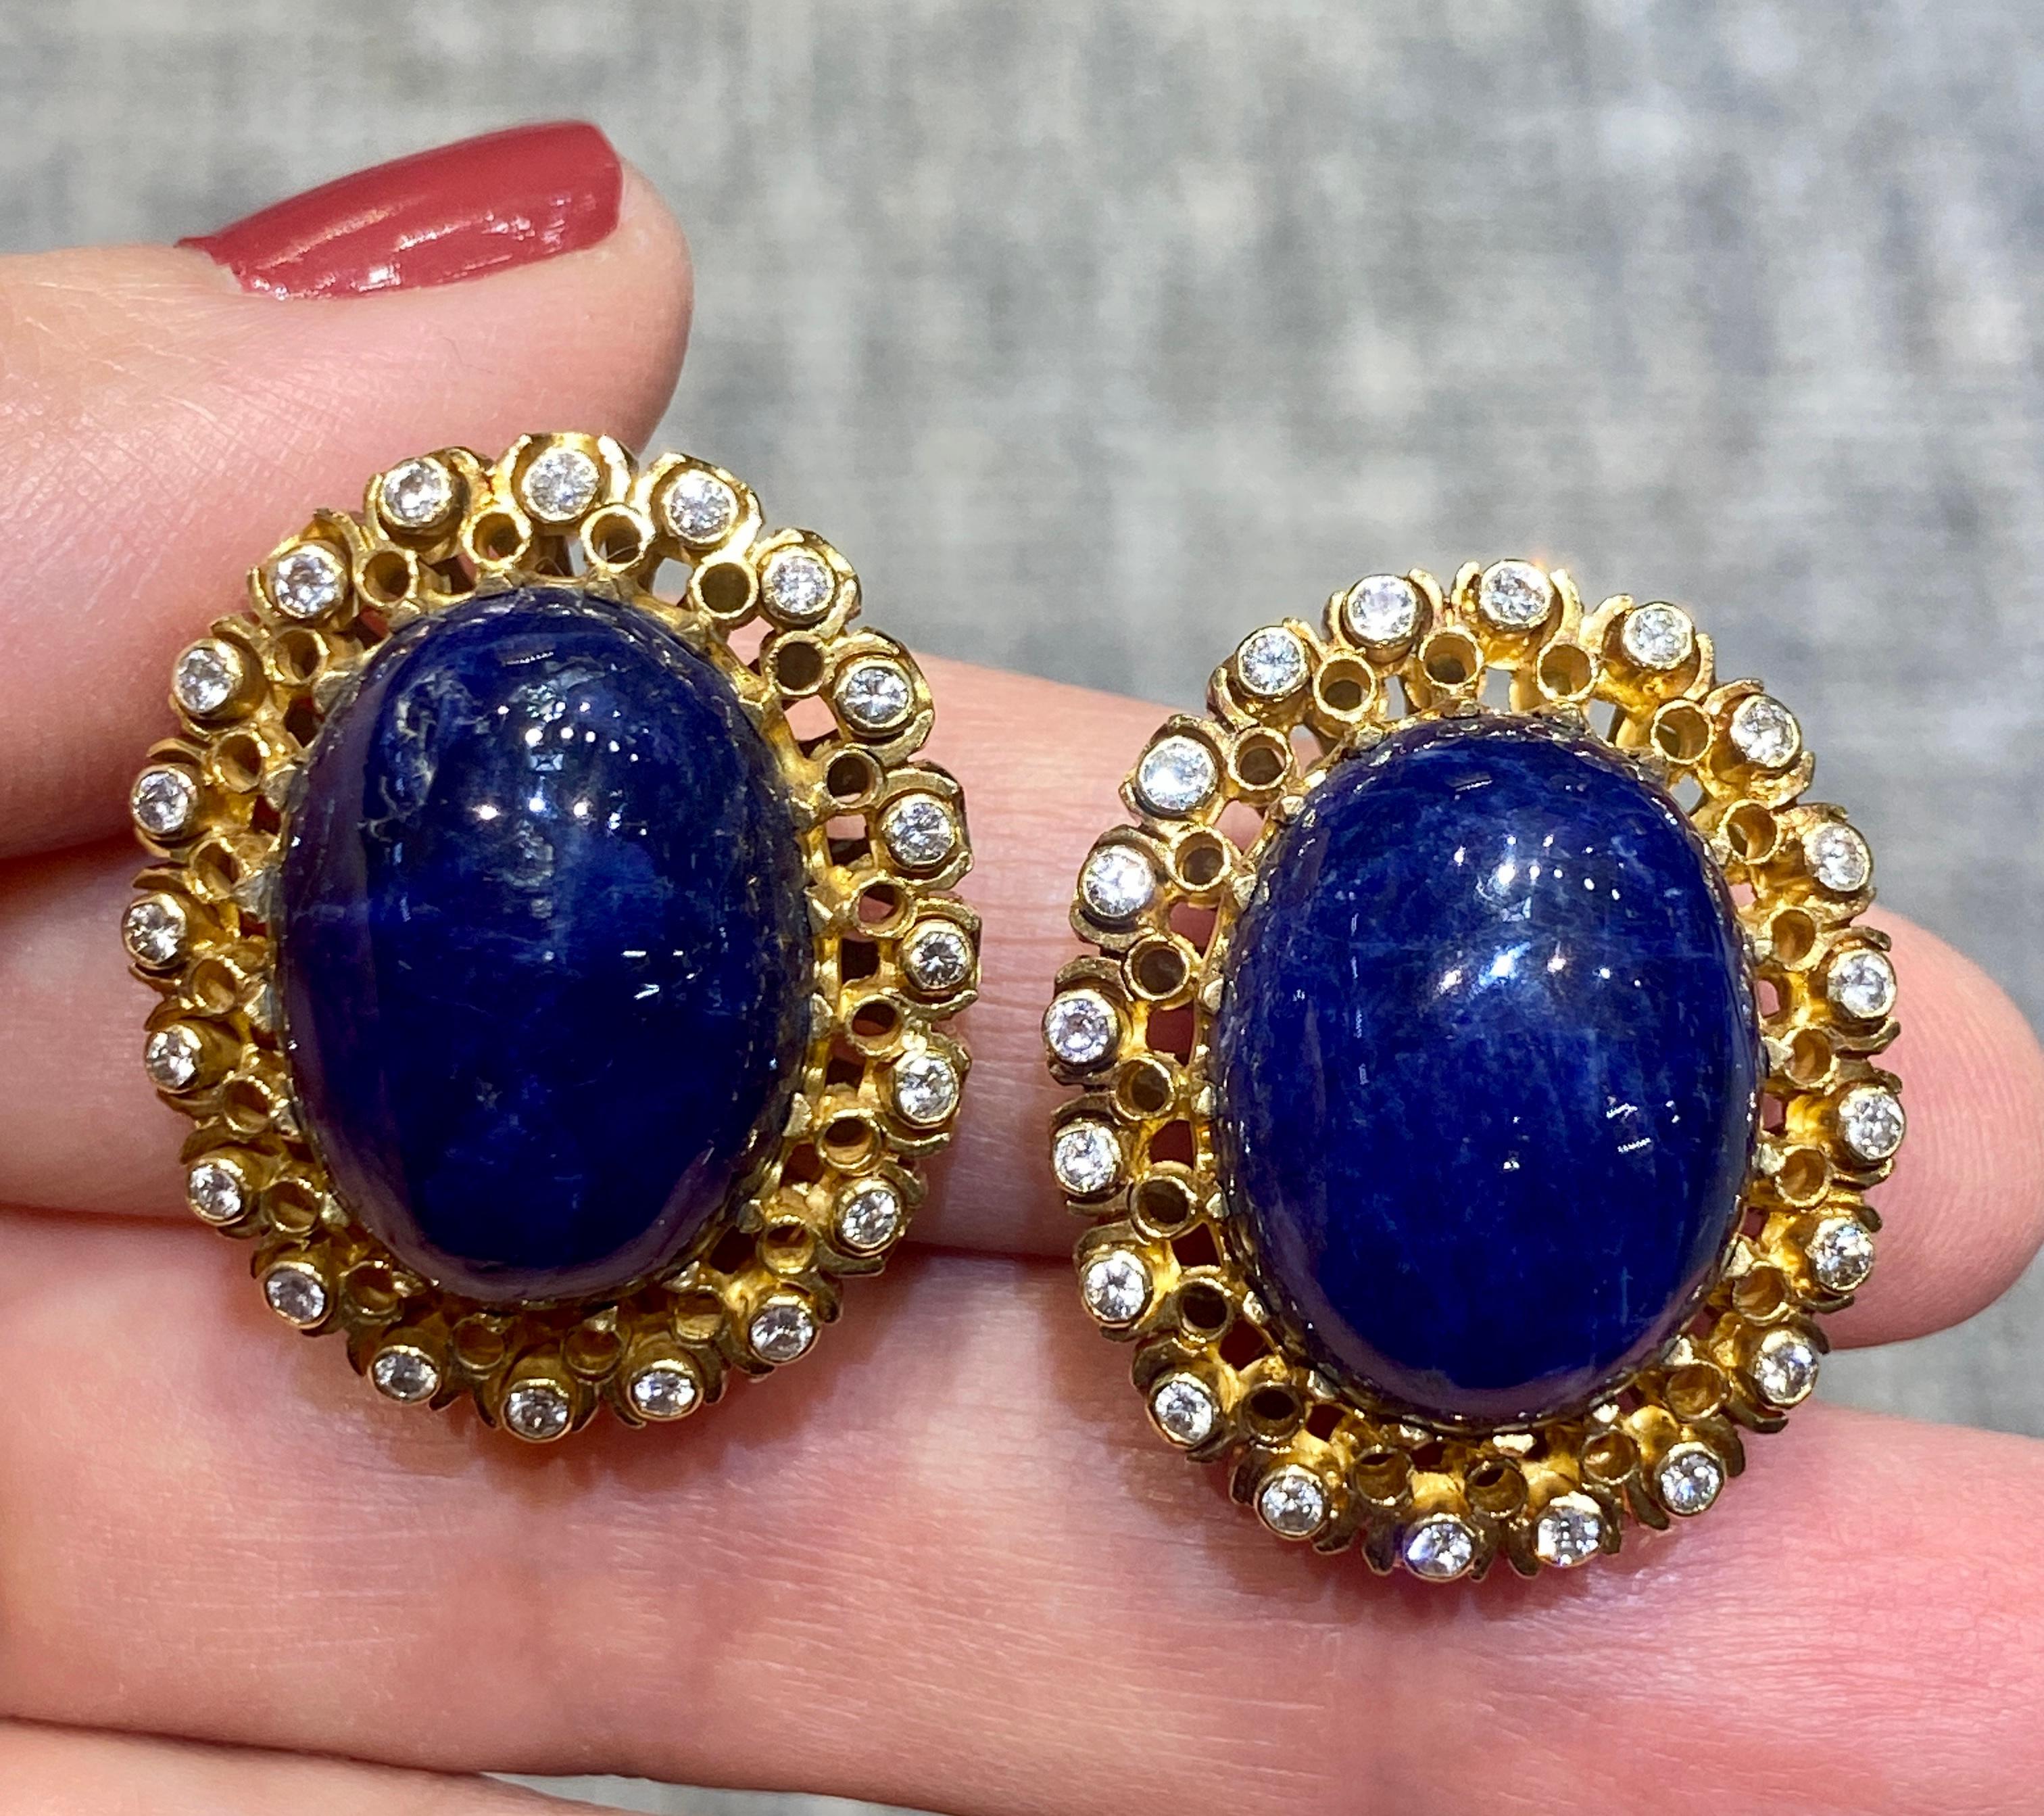 Ces magnifiques boucles d'oreilles à clip Lalaounis en or 18 carats sont composées de lapis-lazuli cabochon entouré de diamants. Les boucles d'oreilles font partie d'un ensemble avec une bague assortie qui est listée séparément sur 1st Dibs.